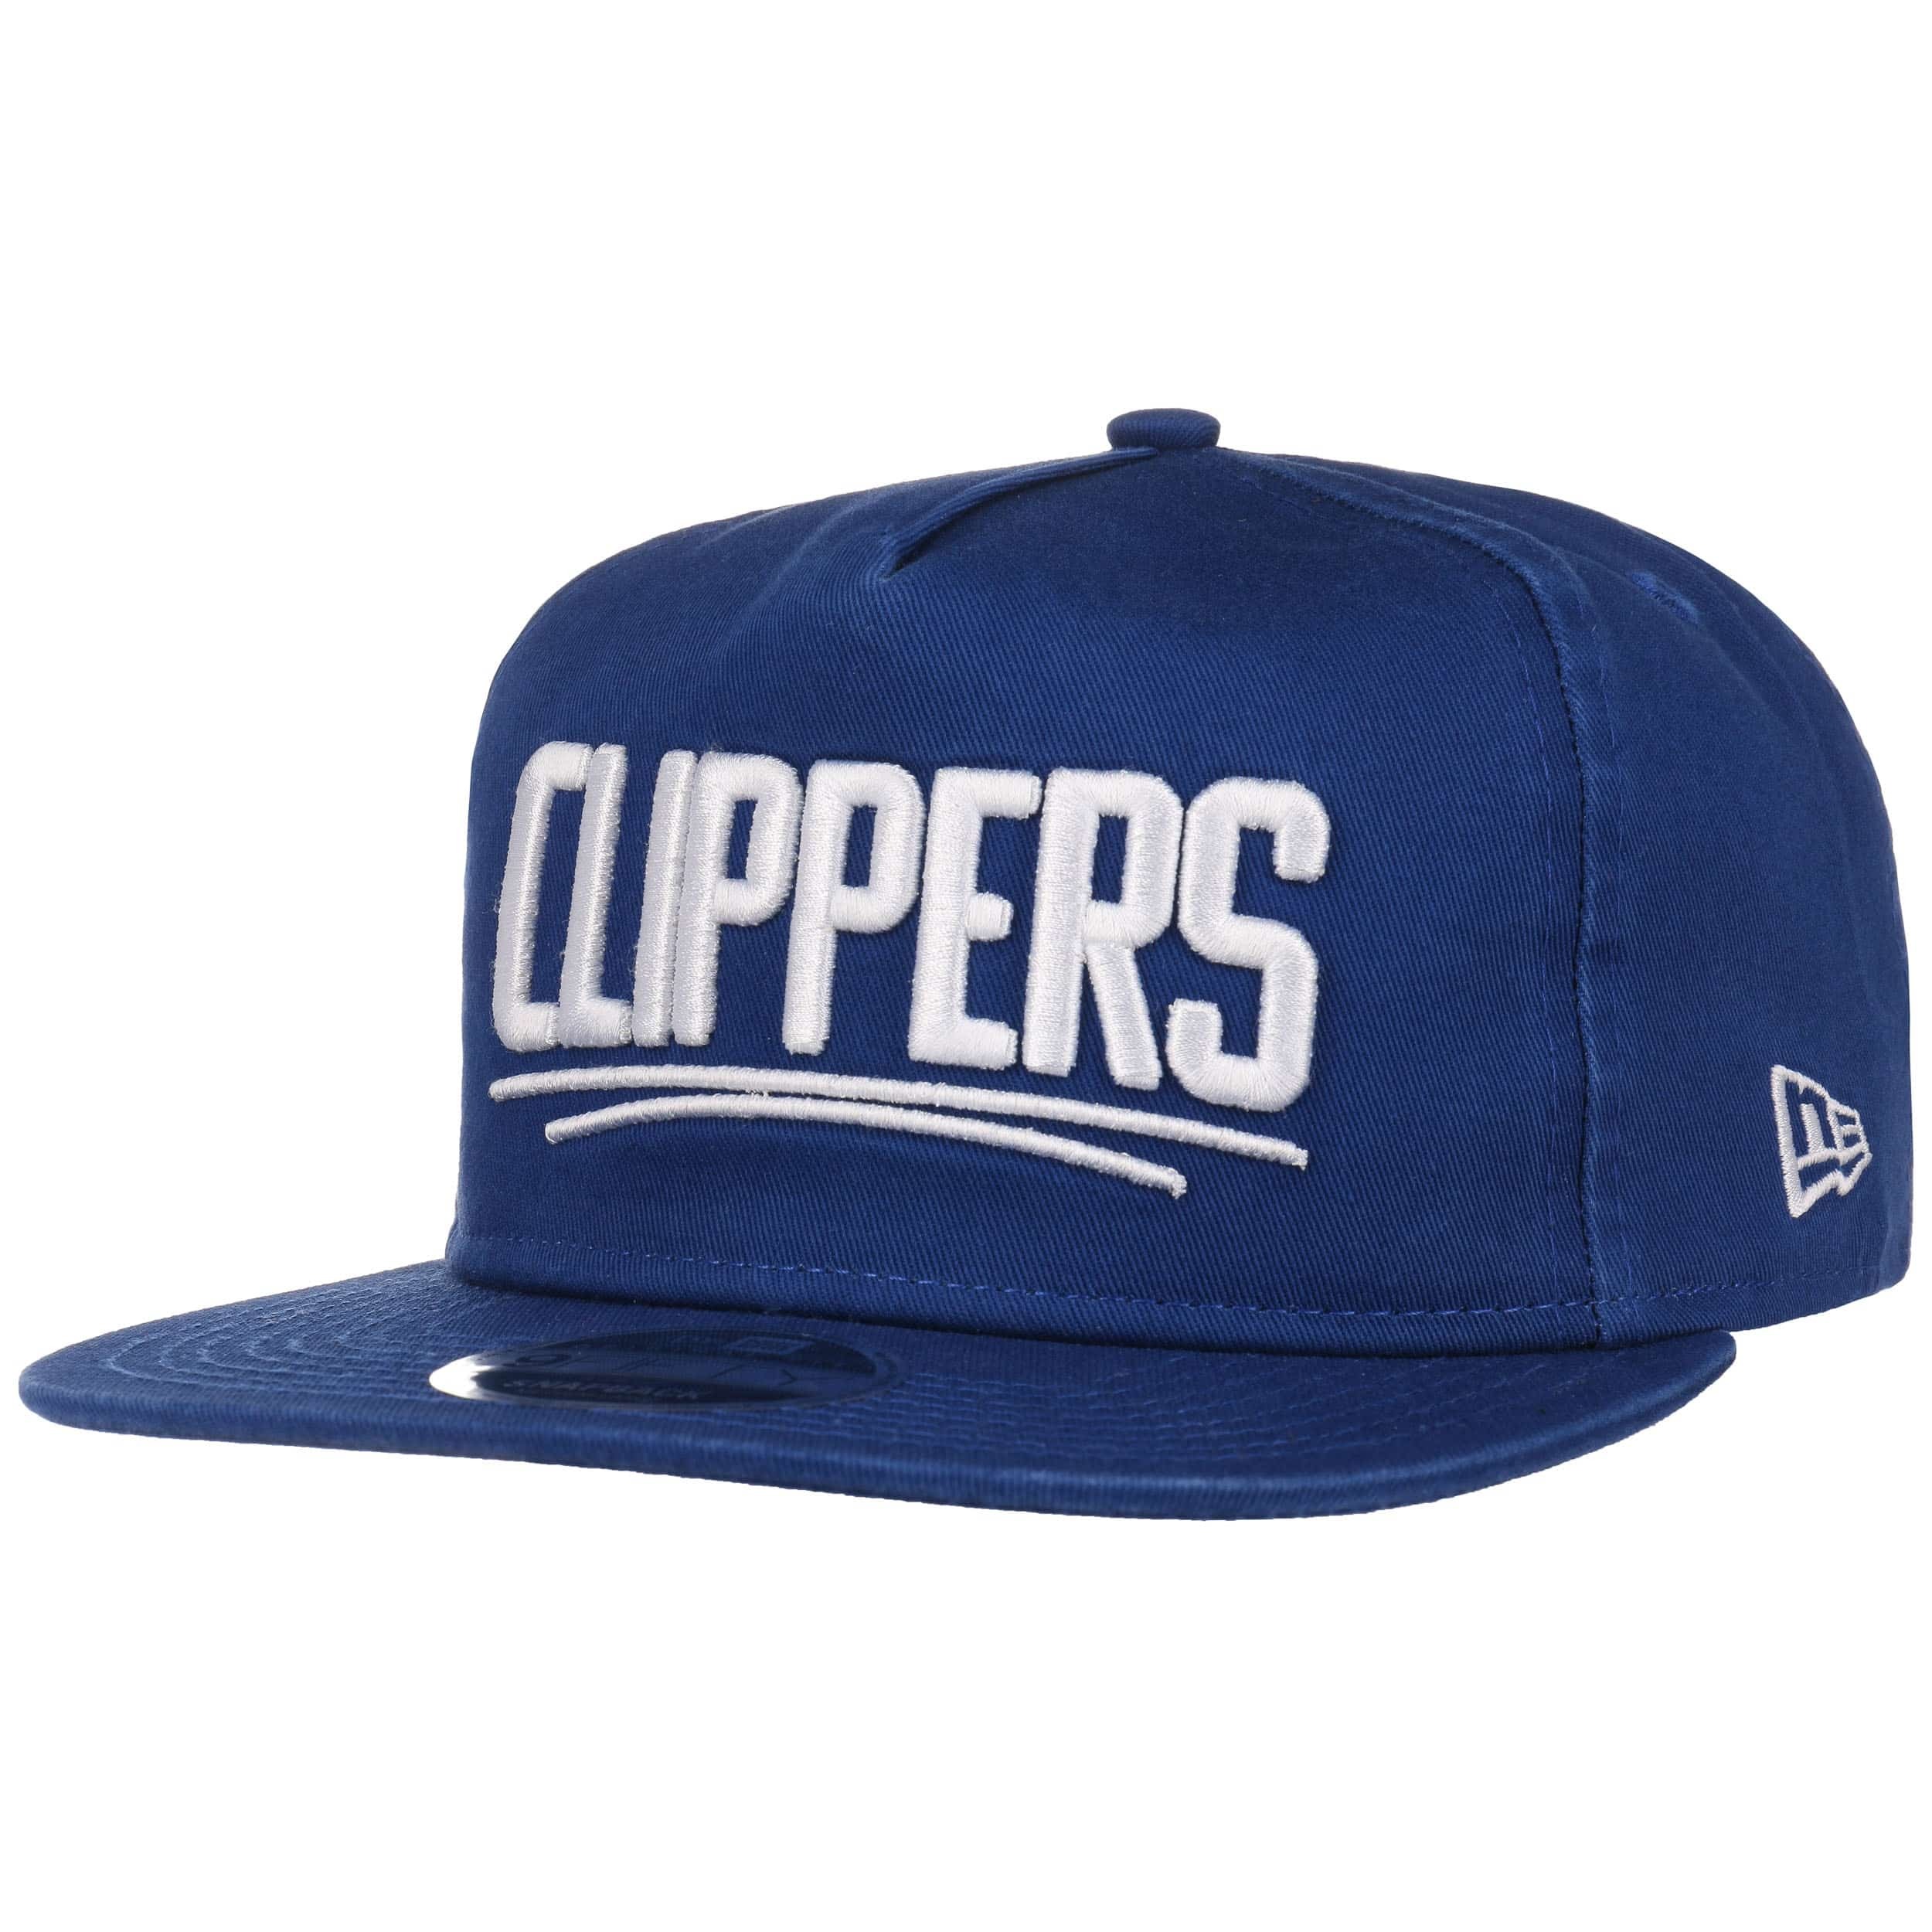 NBA Retro: LA Clippers